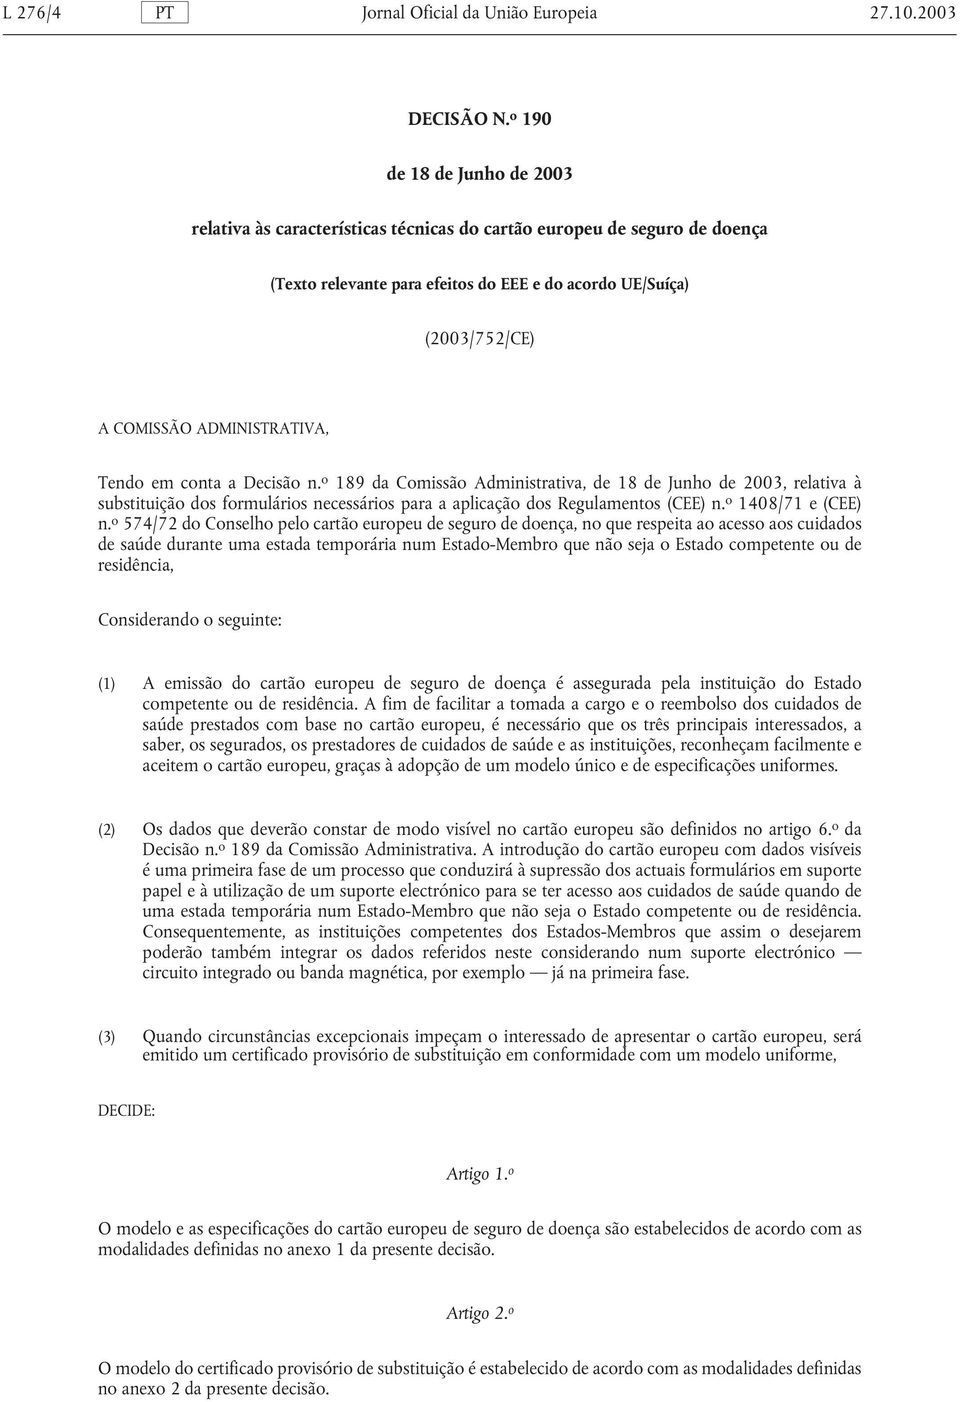 ADMINISTRATIVA, Tendo em conta a Decisão n. o 189 da Comissão Administrativa, de 18 de Junho de 2003, relativa à substituição dos formulários necessários para a aplicação dos Regulamentos (CEE) n.